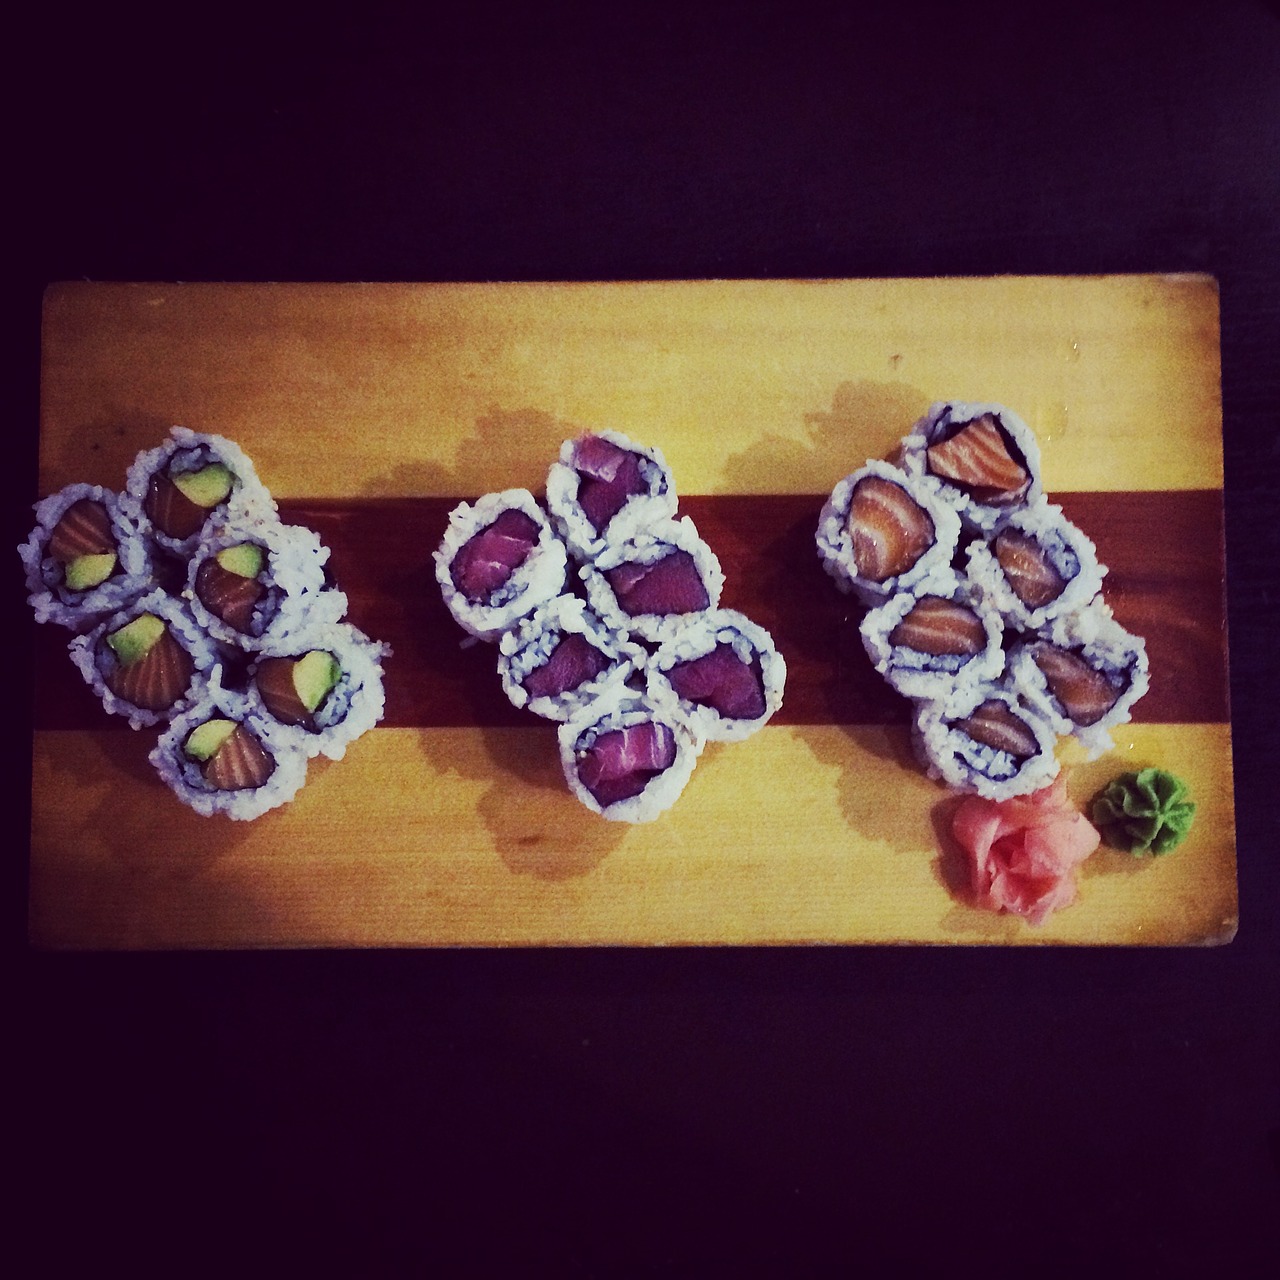 sushi restaurant food free photo